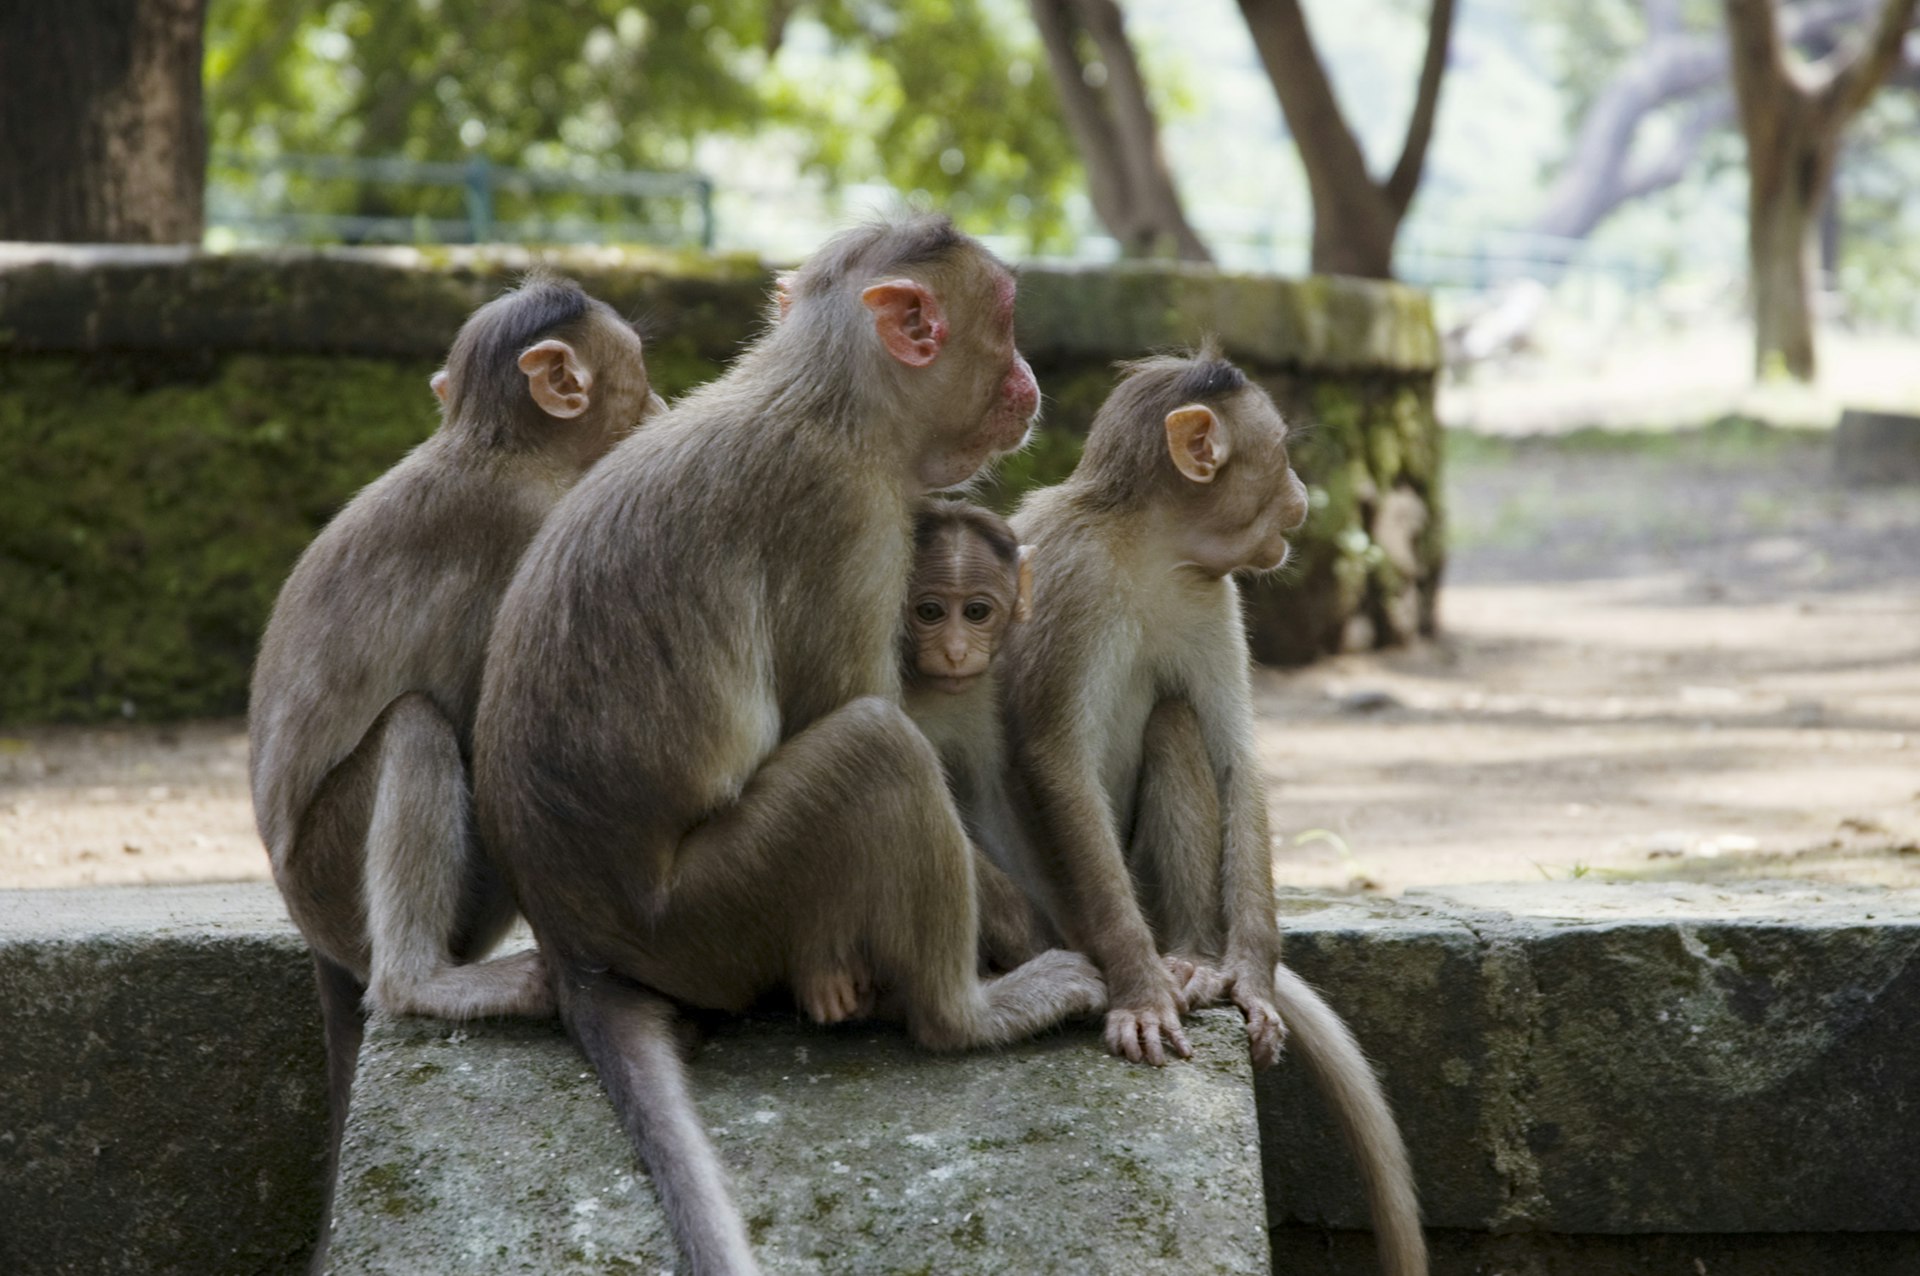 Monkeys near caves at Elephanta Island.